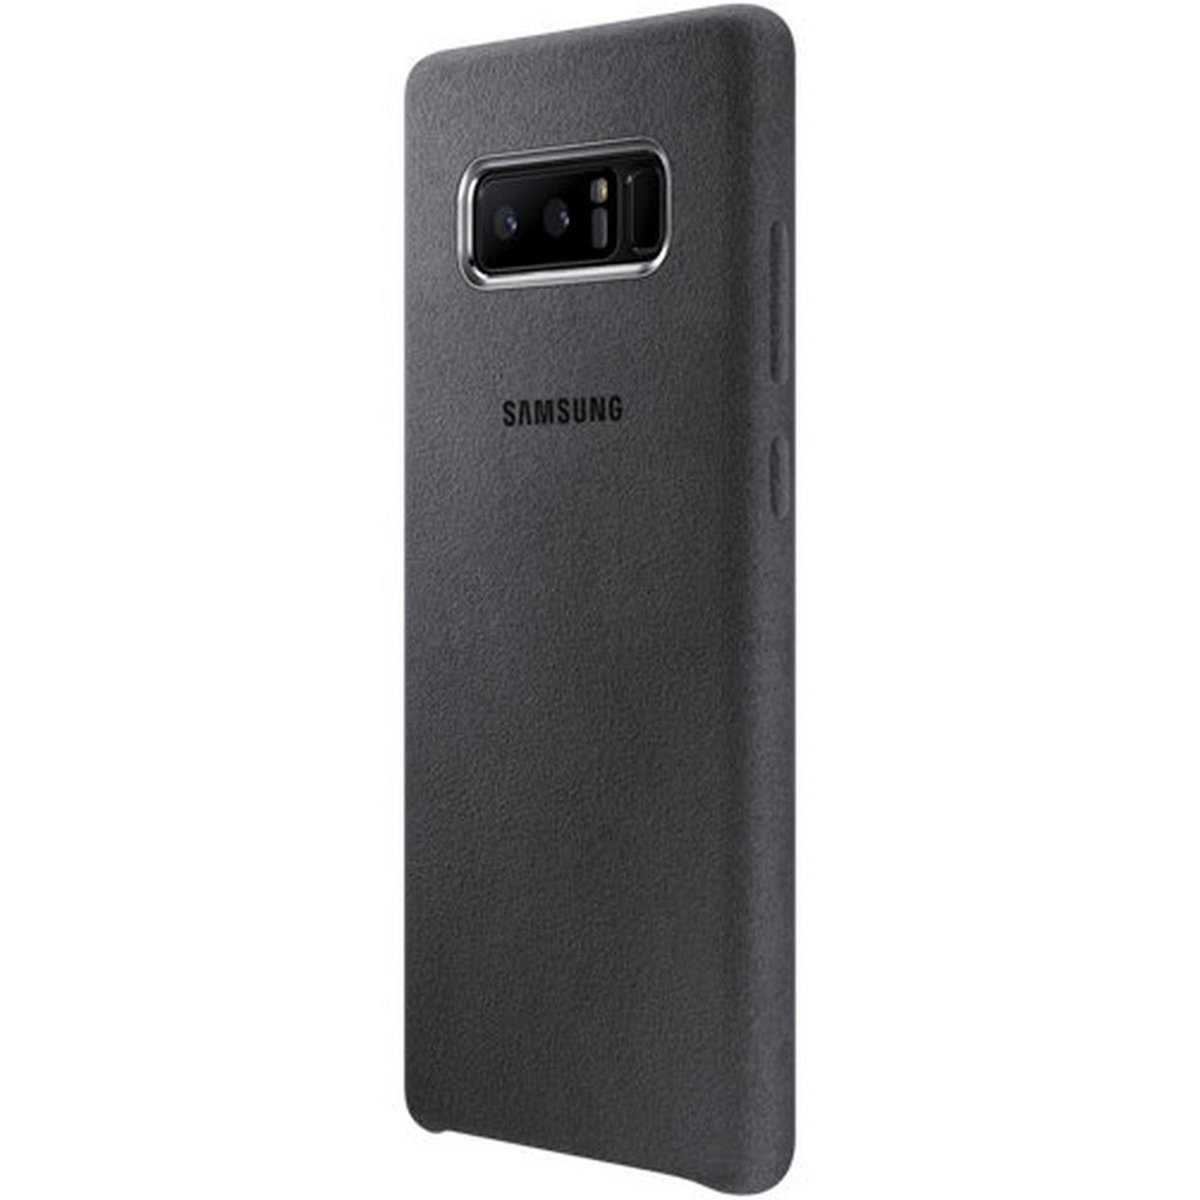 Galaxy Note8 Alcantara Cover XN950 Grey